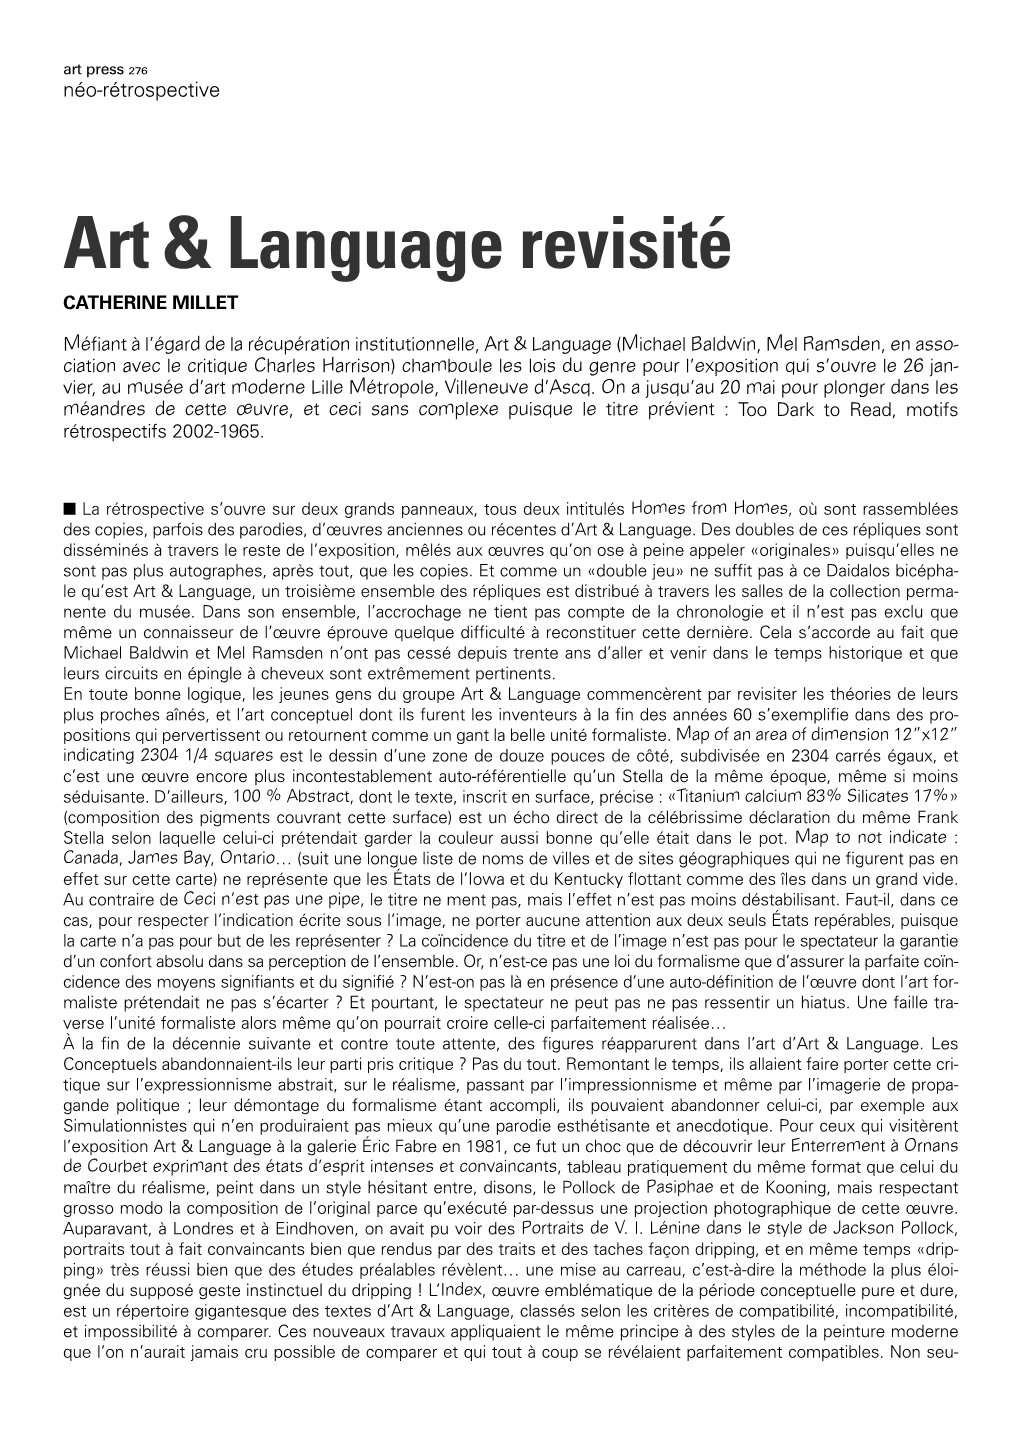 Art & Language Revisité